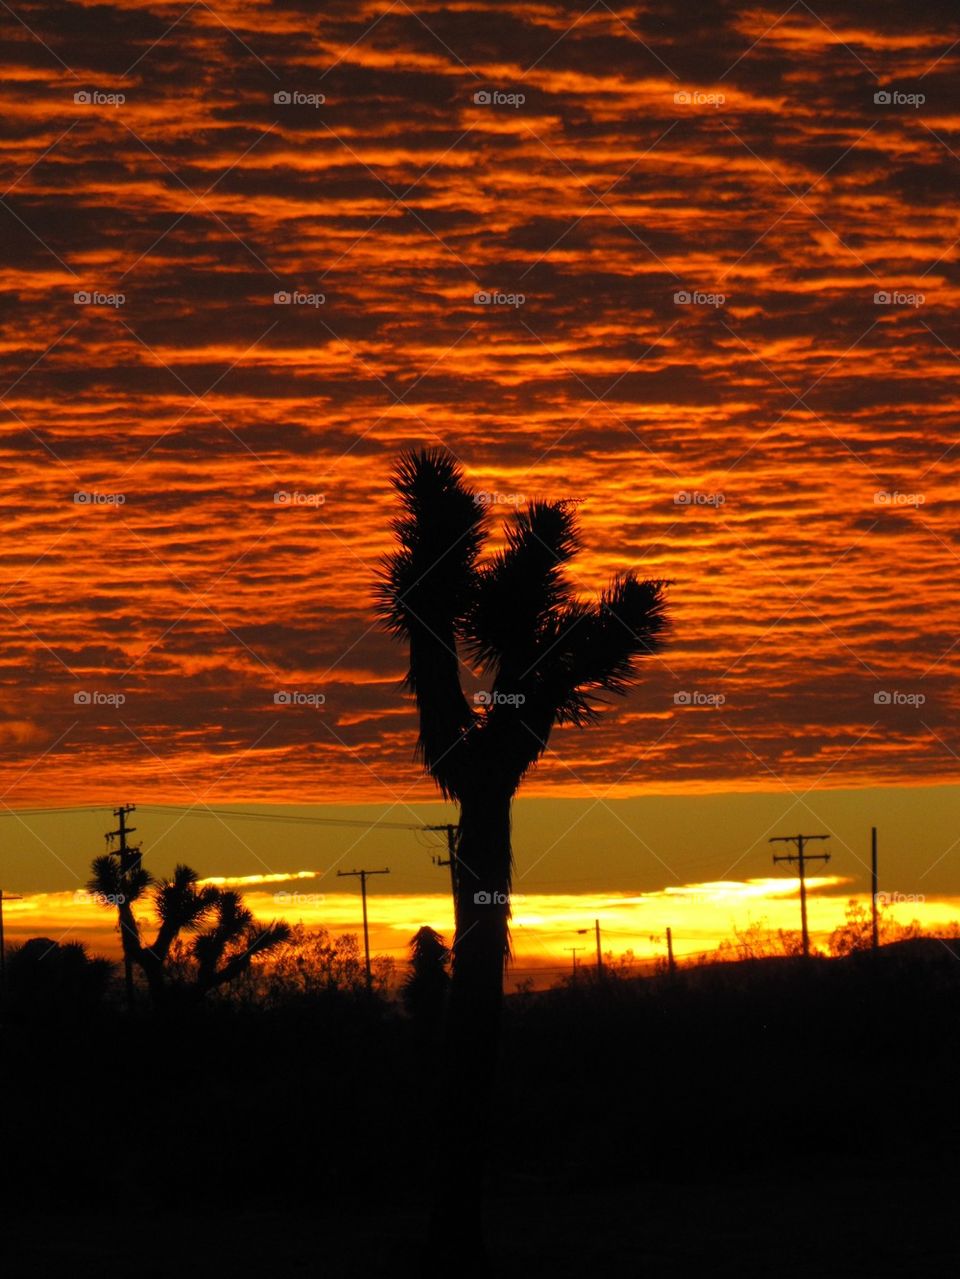 Sunrise in the California Desert